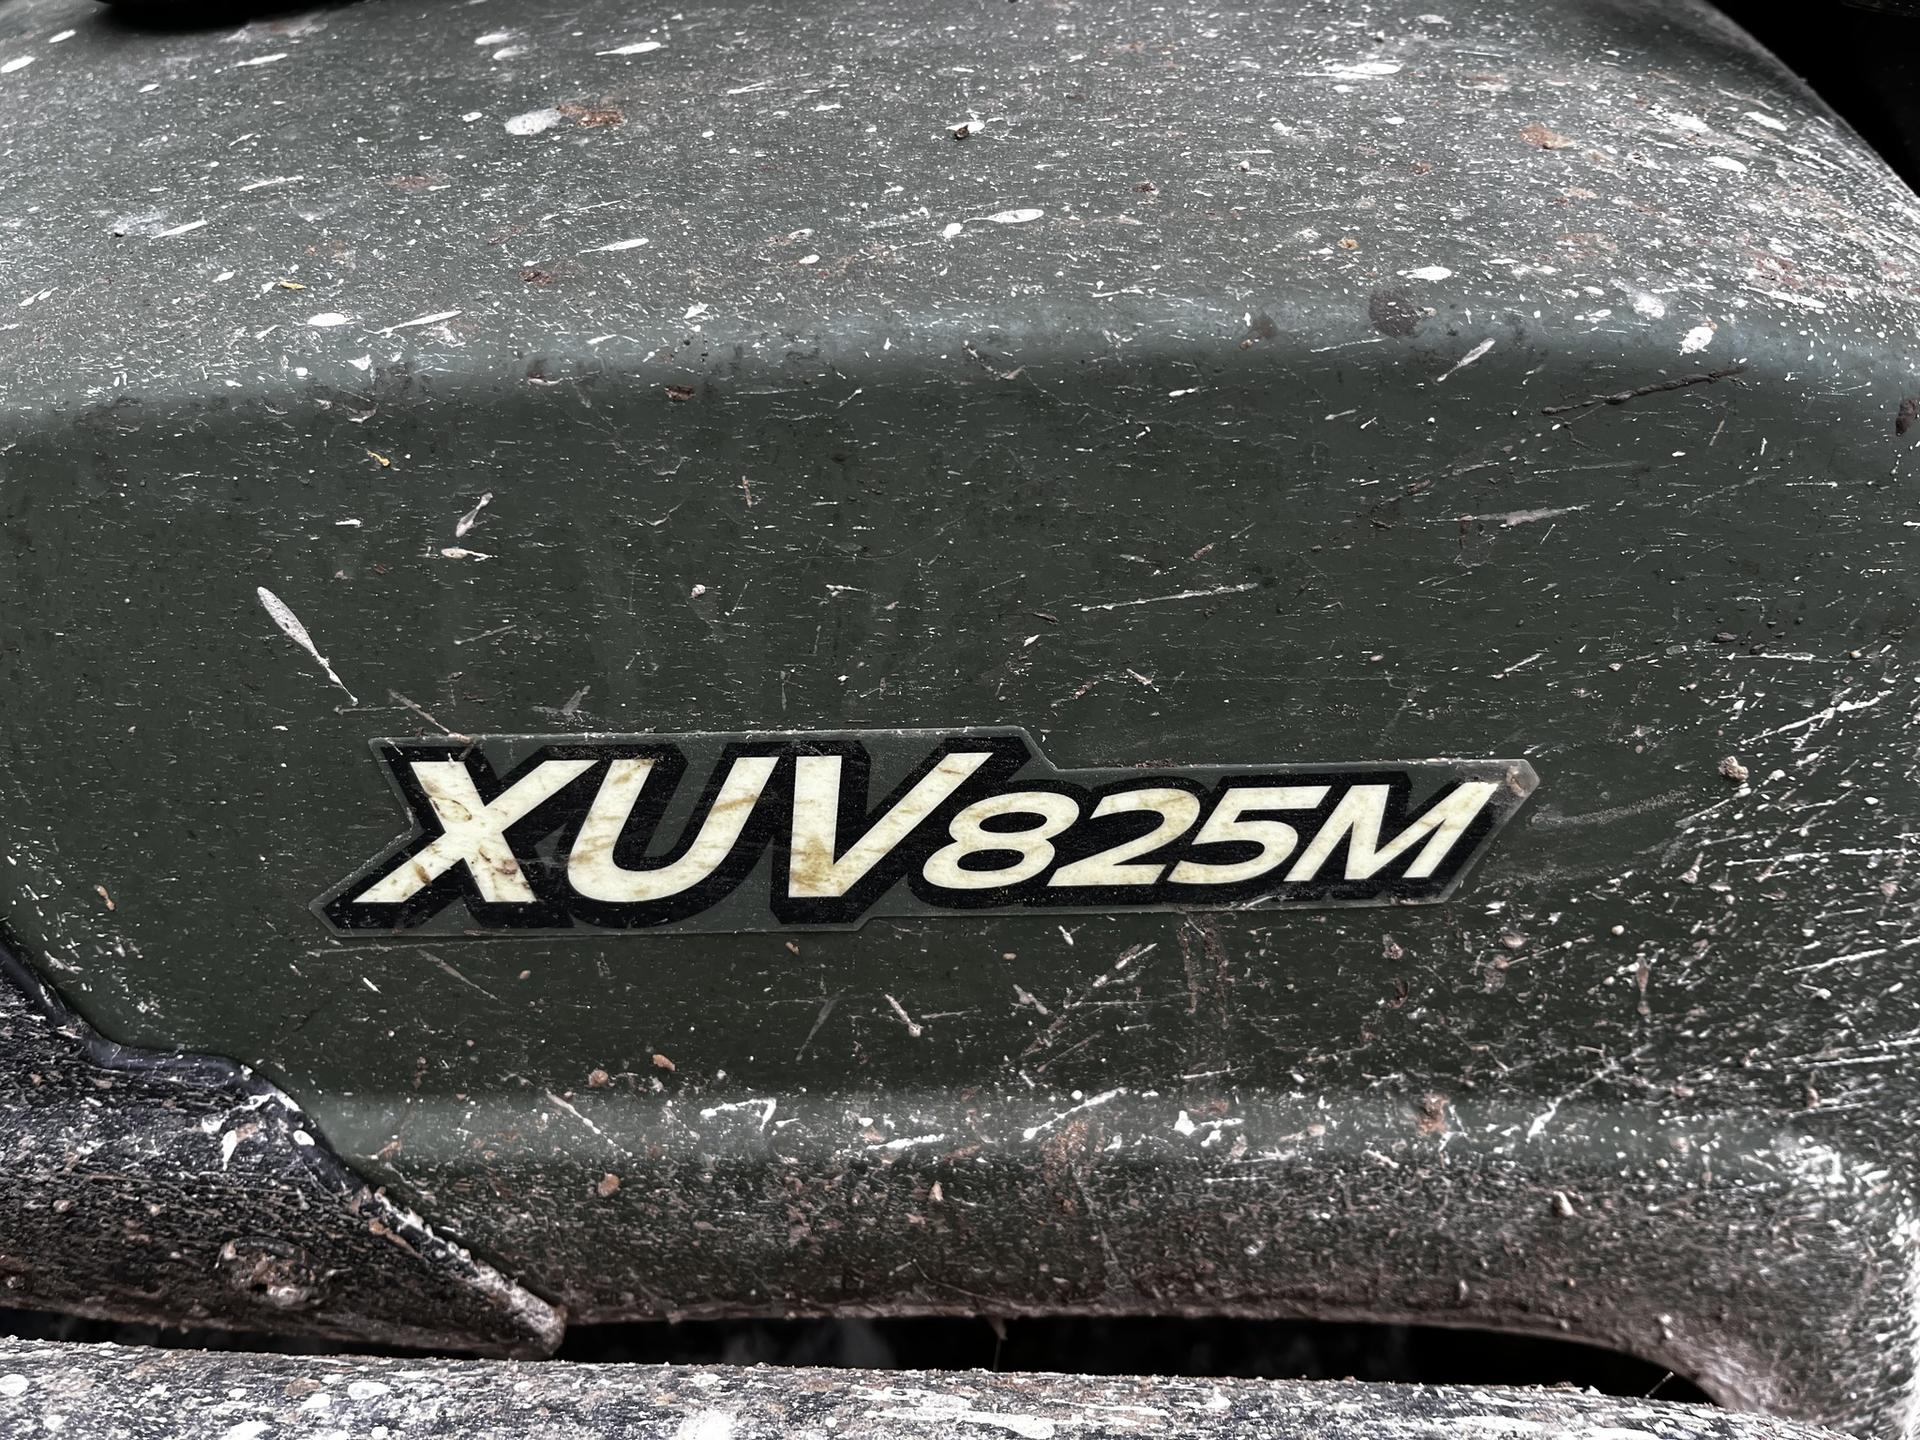 2018 John Deere XUV 825M